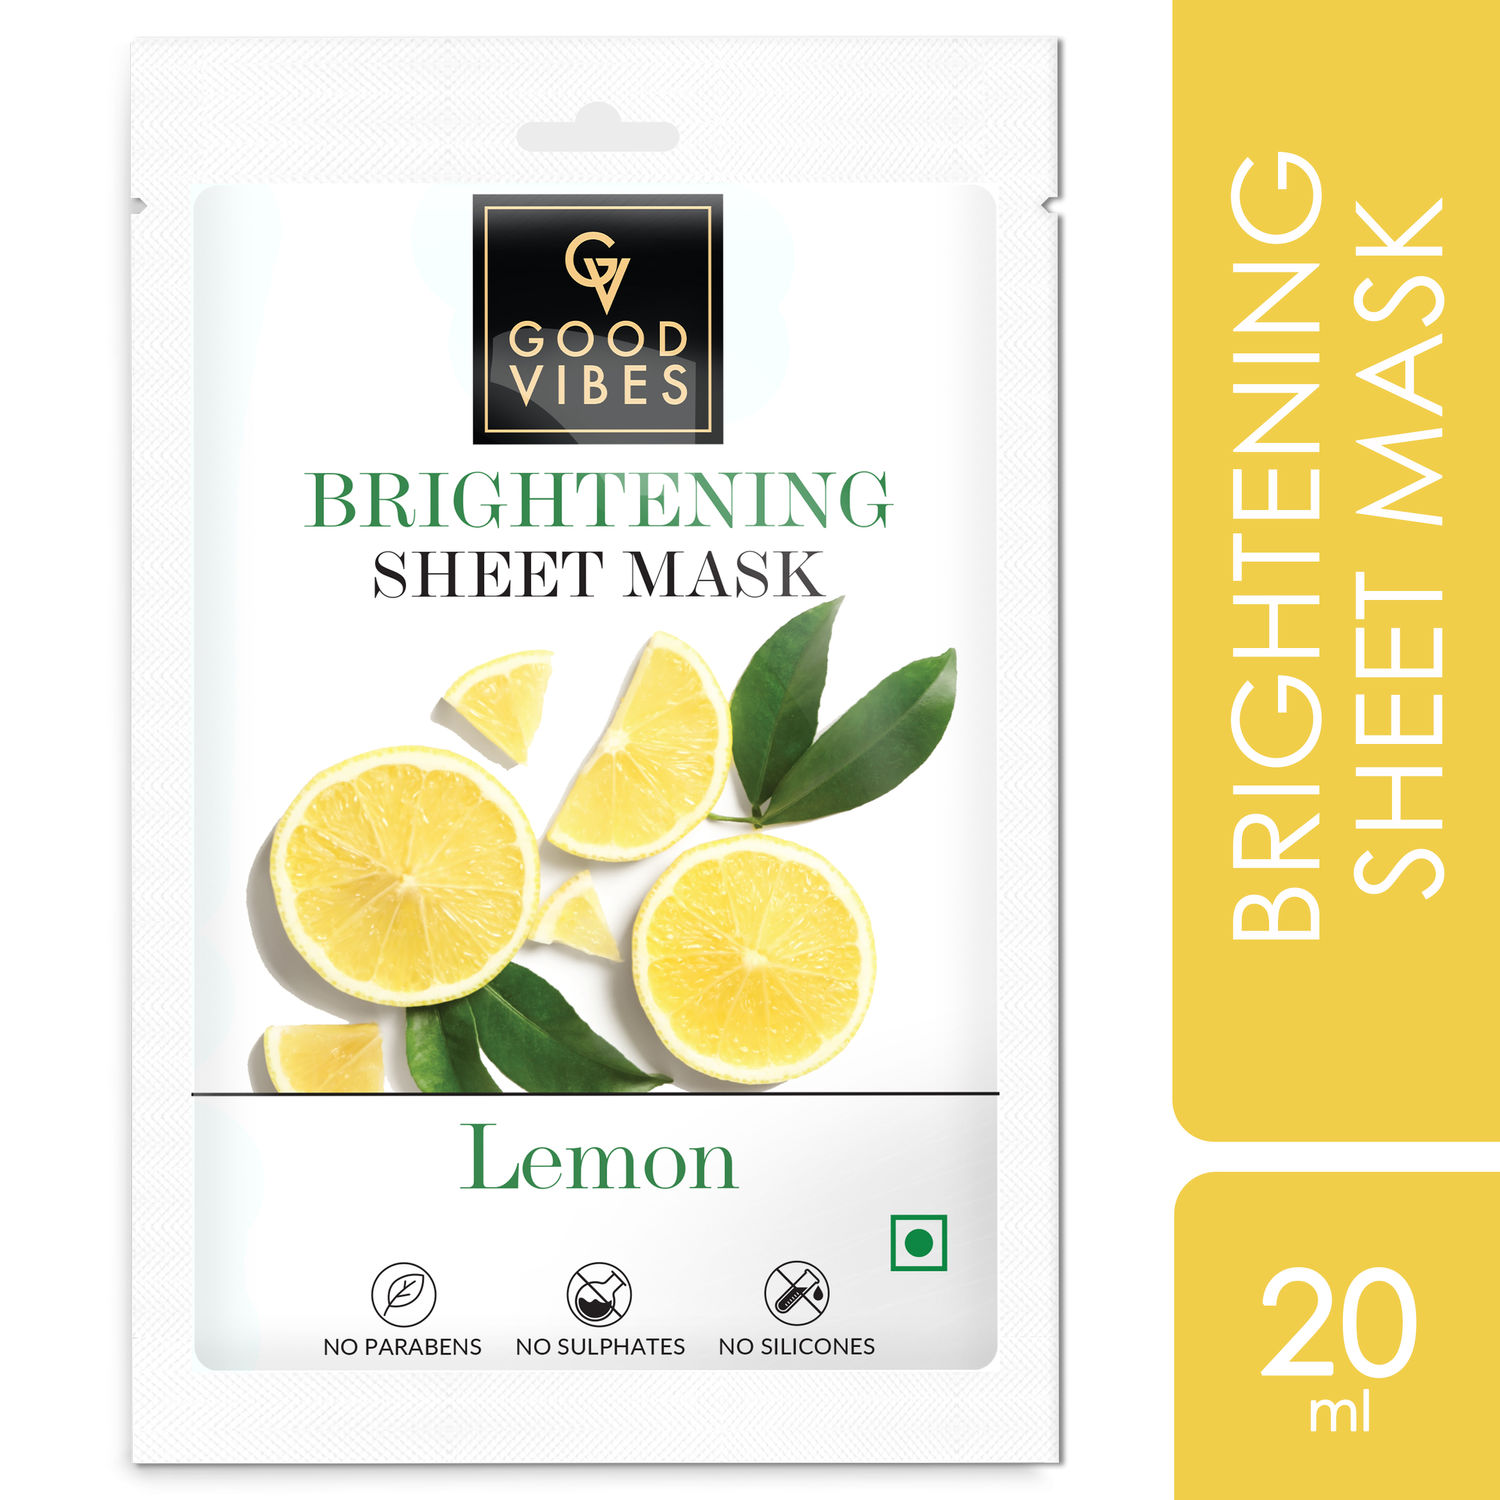 Buy Good Vibes Brightening Sheet Mask - Lemon (20 ml) - Purplle